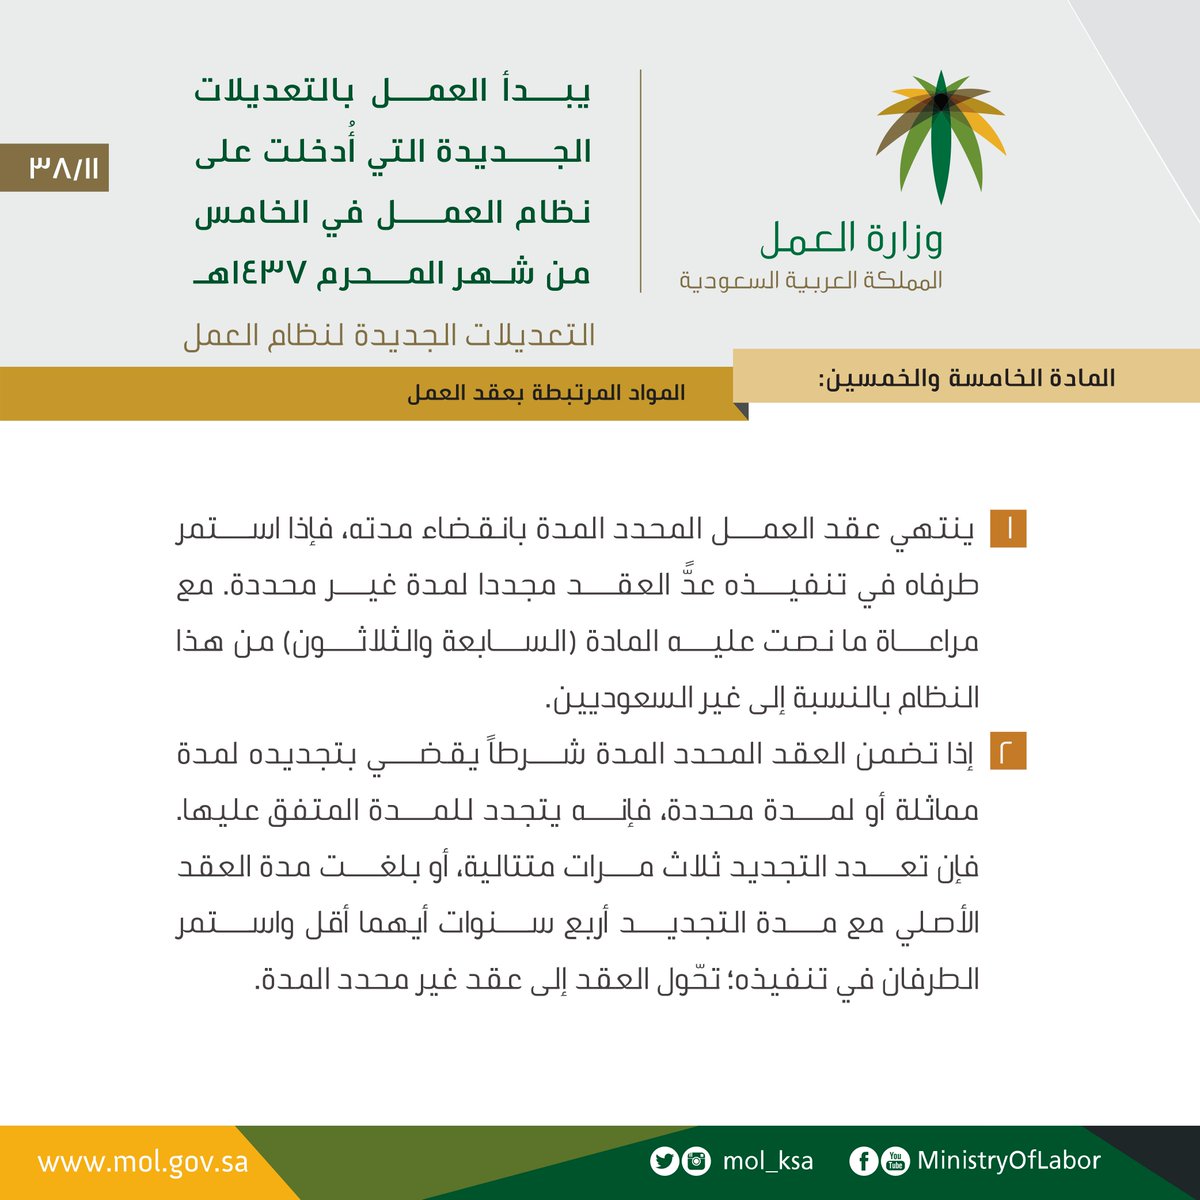 عقد عمل وزارة العمل السعودية